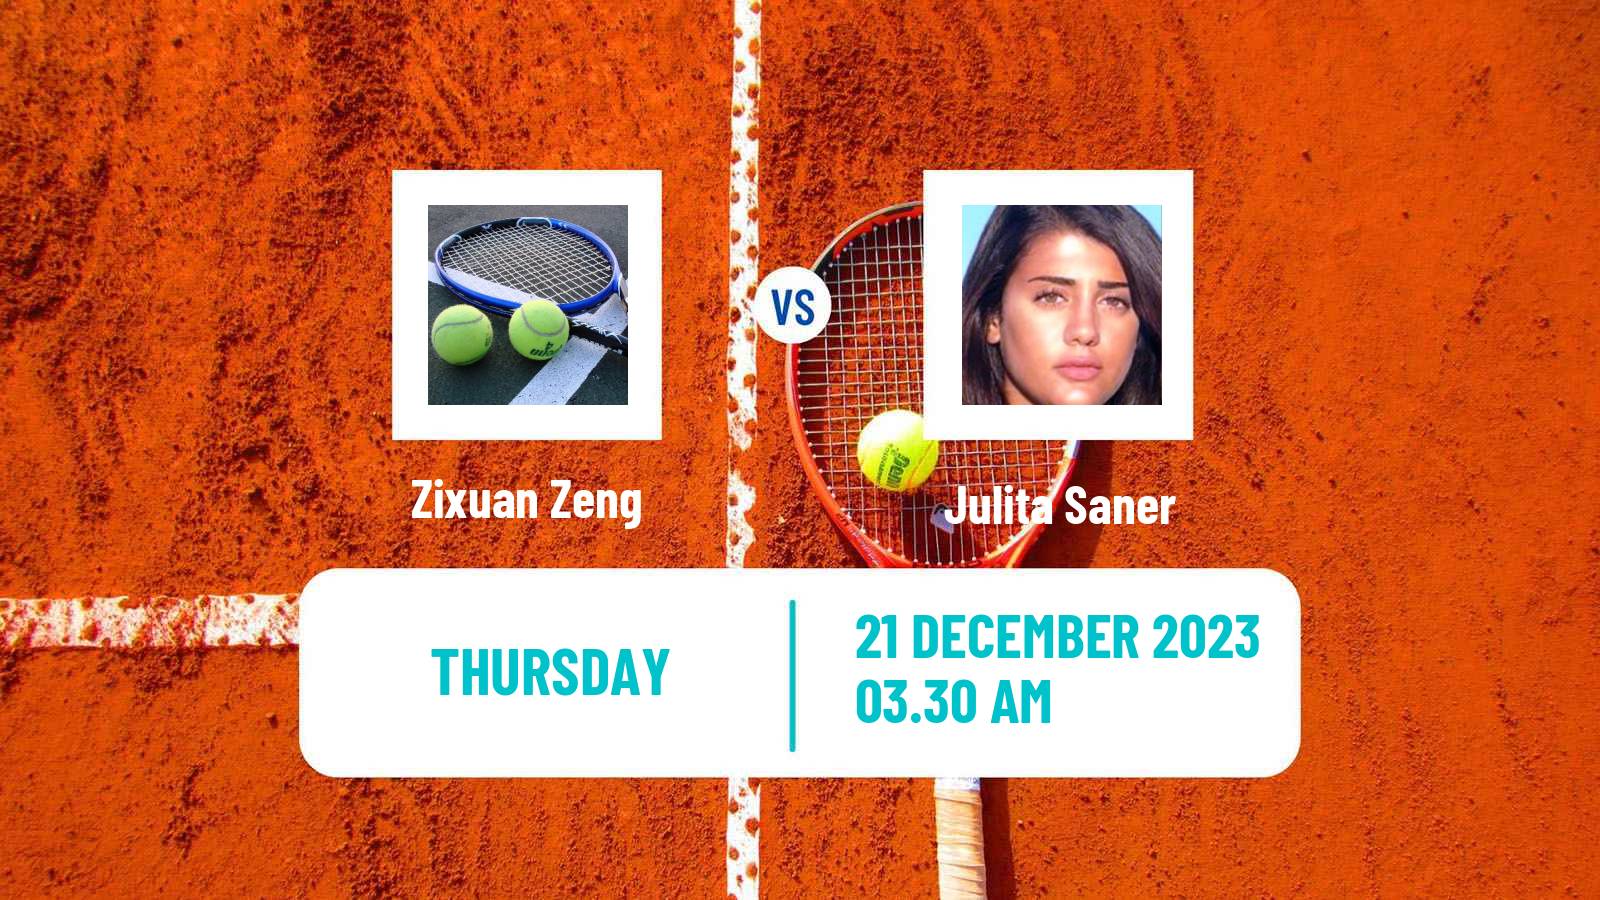 Tennis ITF W15 Monastir 43 Women Zixuan Zeng - Julita Saner